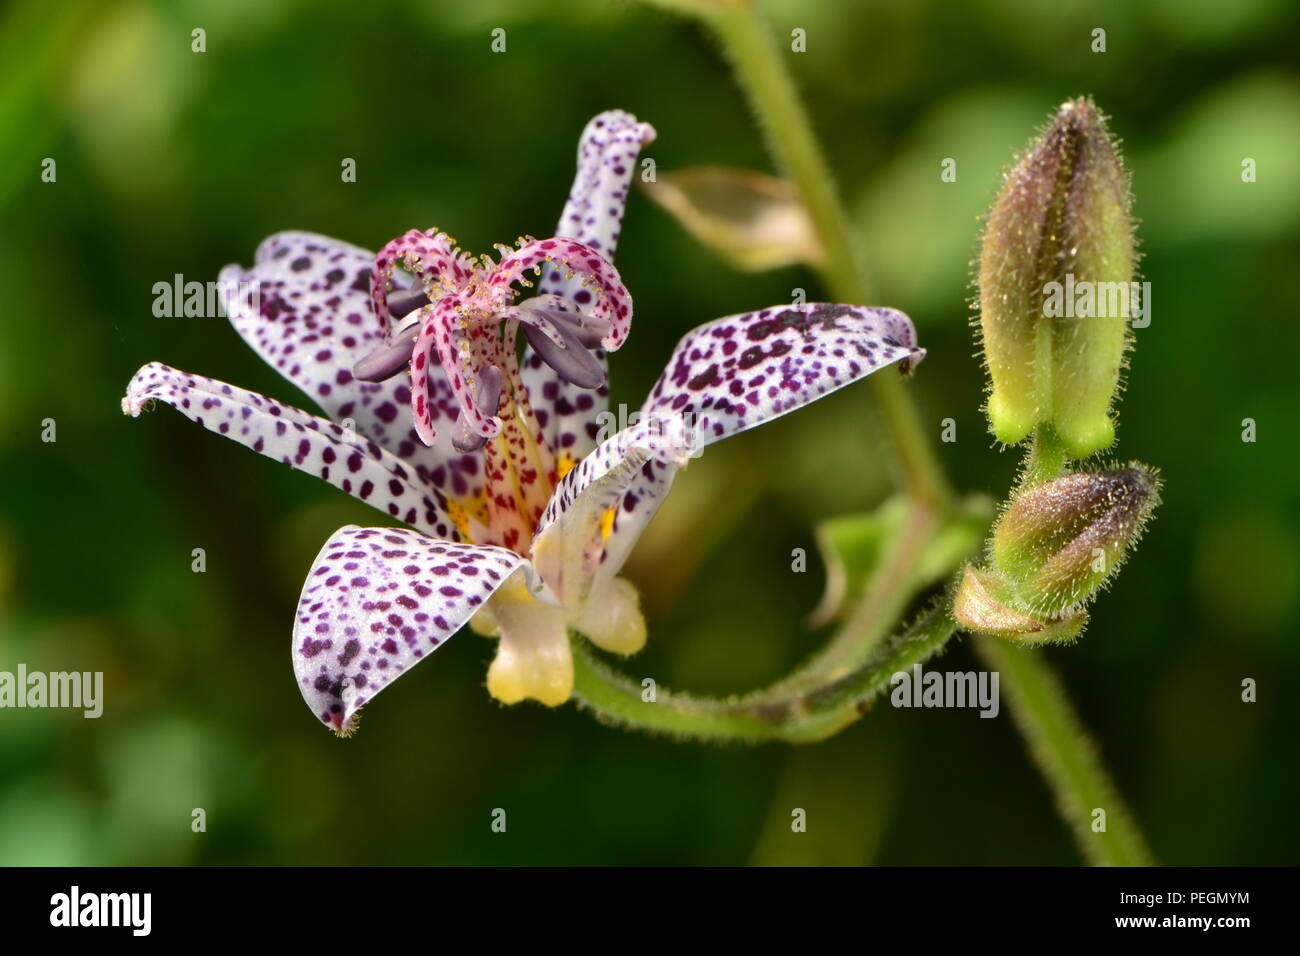 Tricyrtis hirta-garten Orchidee - kröte Lilien - Makro. Weiße Blüten mit lila Flecken und grünen Blütenknospen Stockfoto